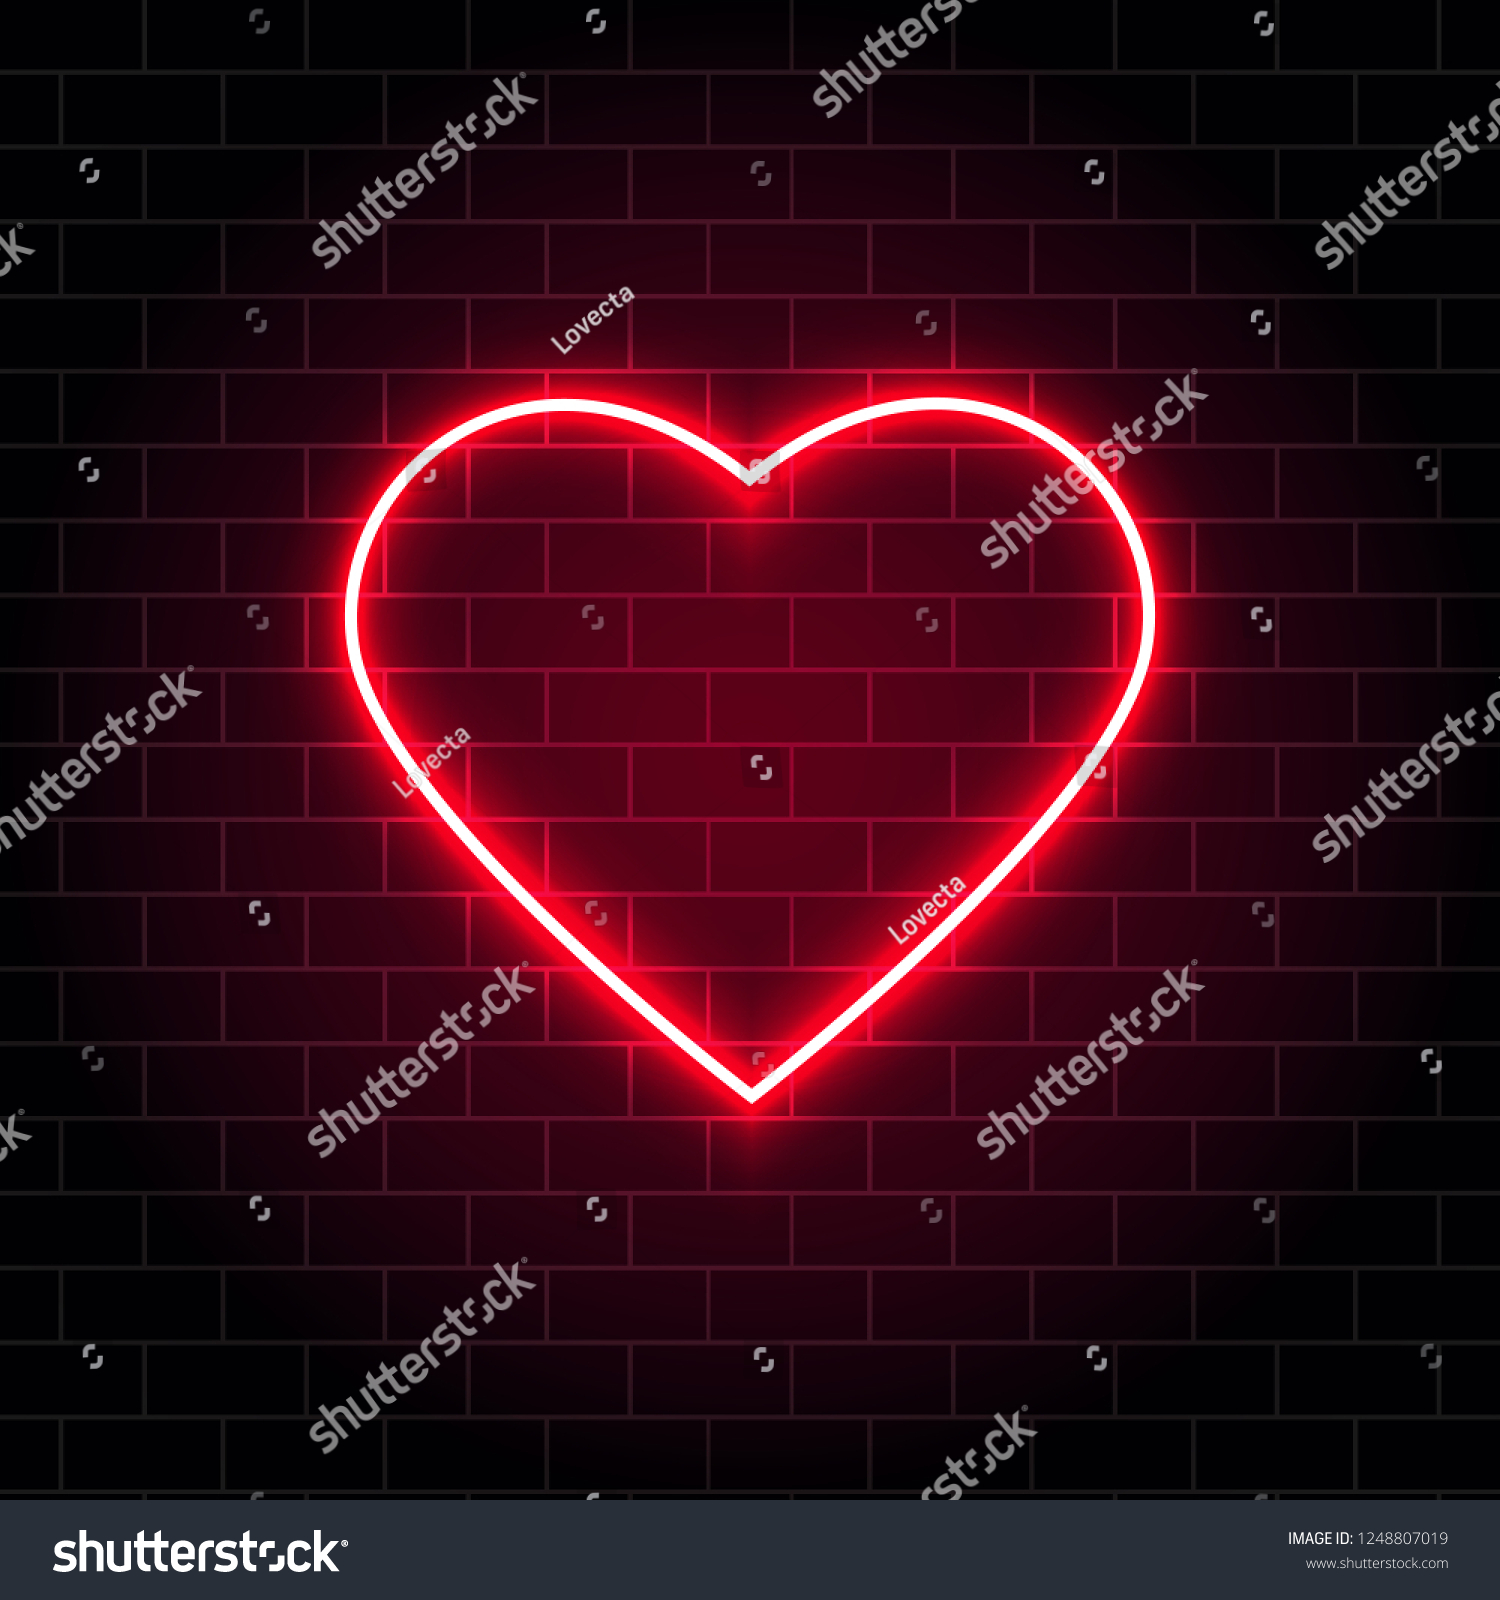 37,715 Neon red heart Images, Stock Photos & Vectors | Shutterstock